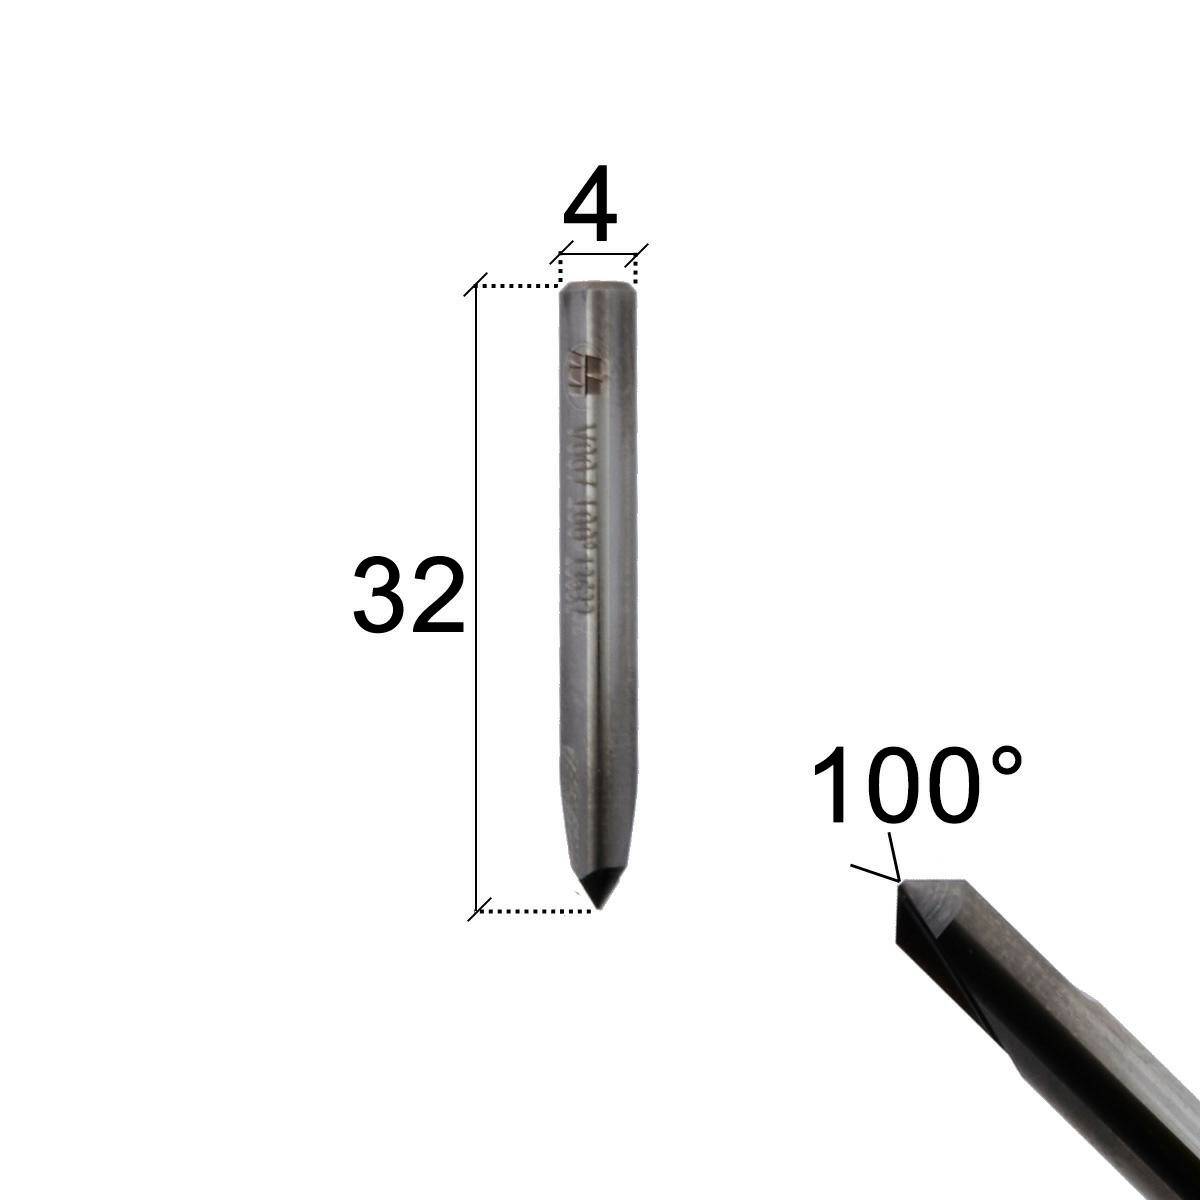 Finger cutter V007 - high temperature resistant